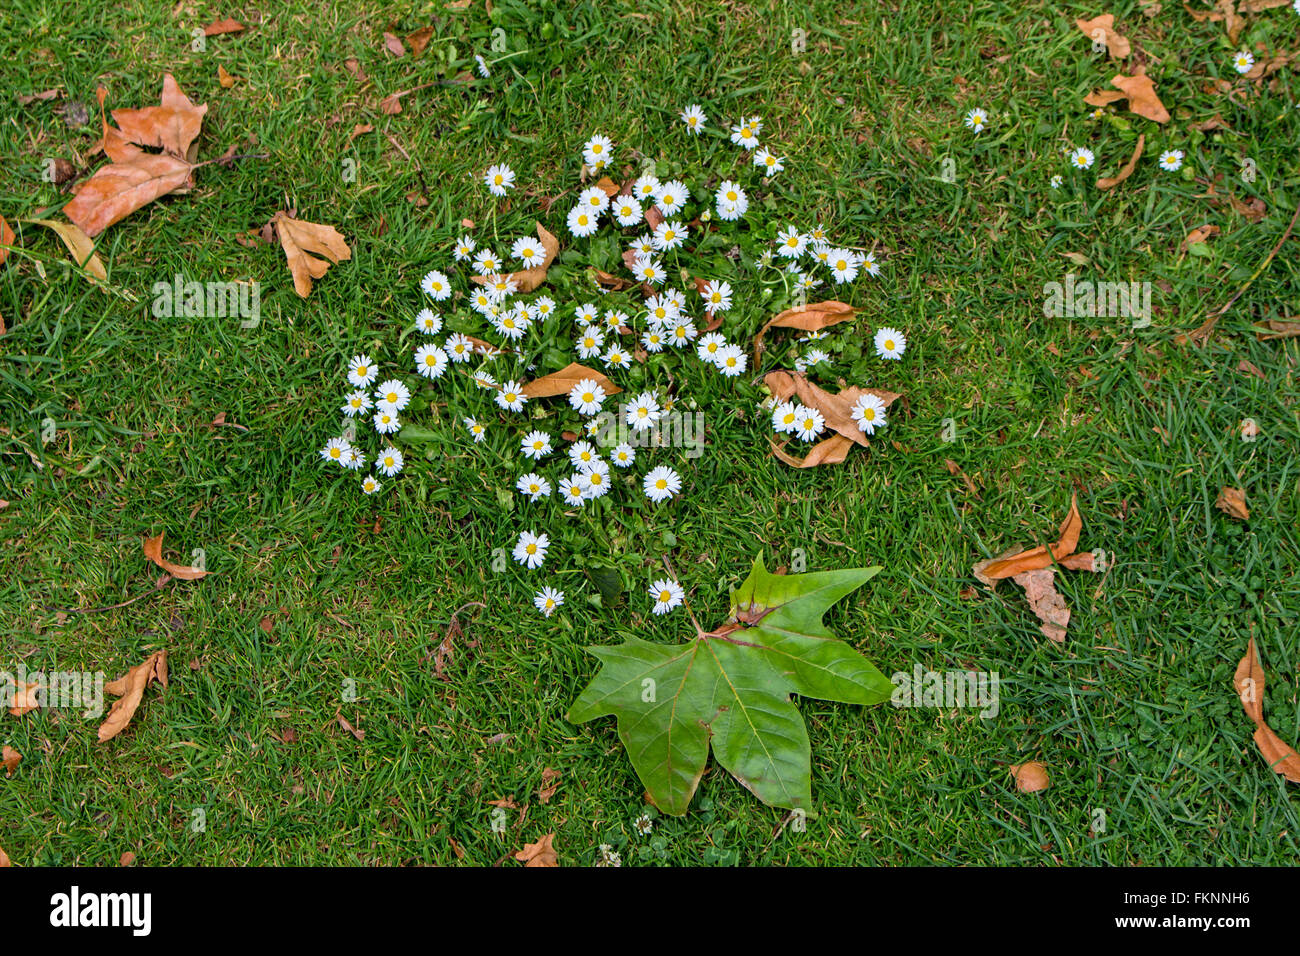 Herbst-Szene. Gänseblümchen und Laub auf dem Rasen in einem englischen Landhaus Garten UK Stockfoto